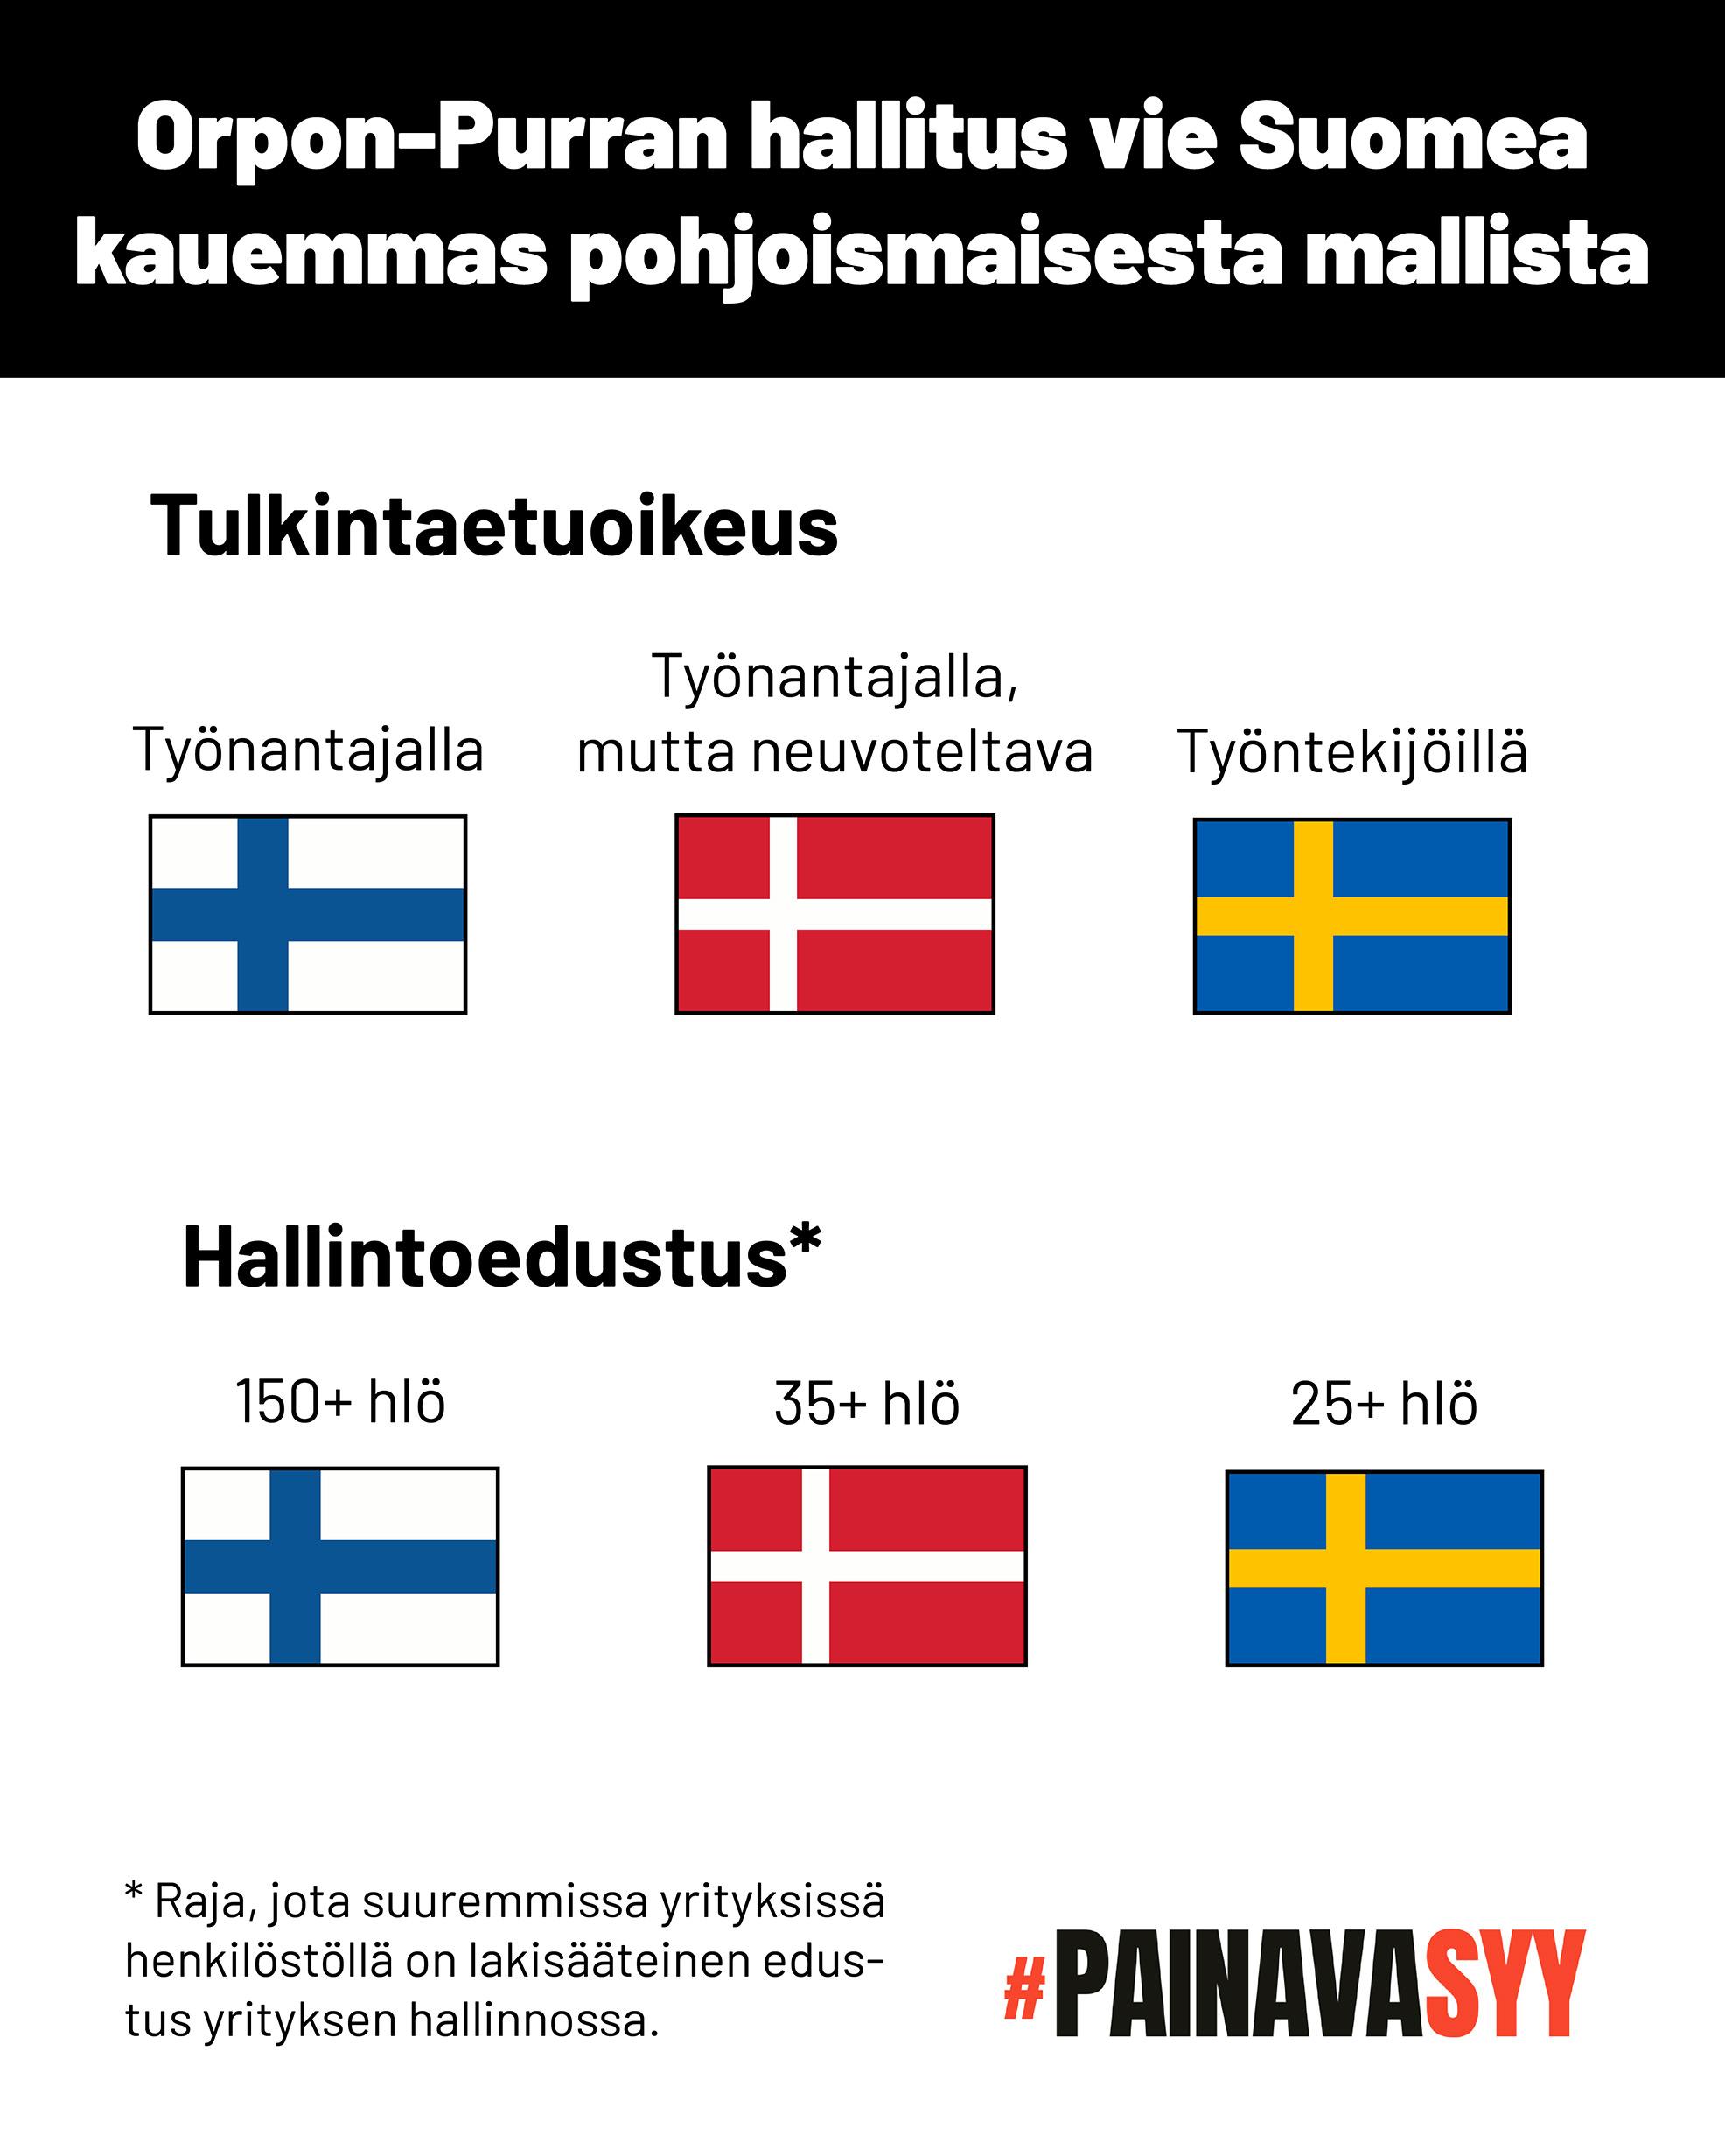 Kaavio osoittaa, että tulkintaetuoikeus on Ruotsissa työntekijöillä, Tanskassa työnantajalla, mutta neuvoteltava, ja Suomessa työnantajalla.